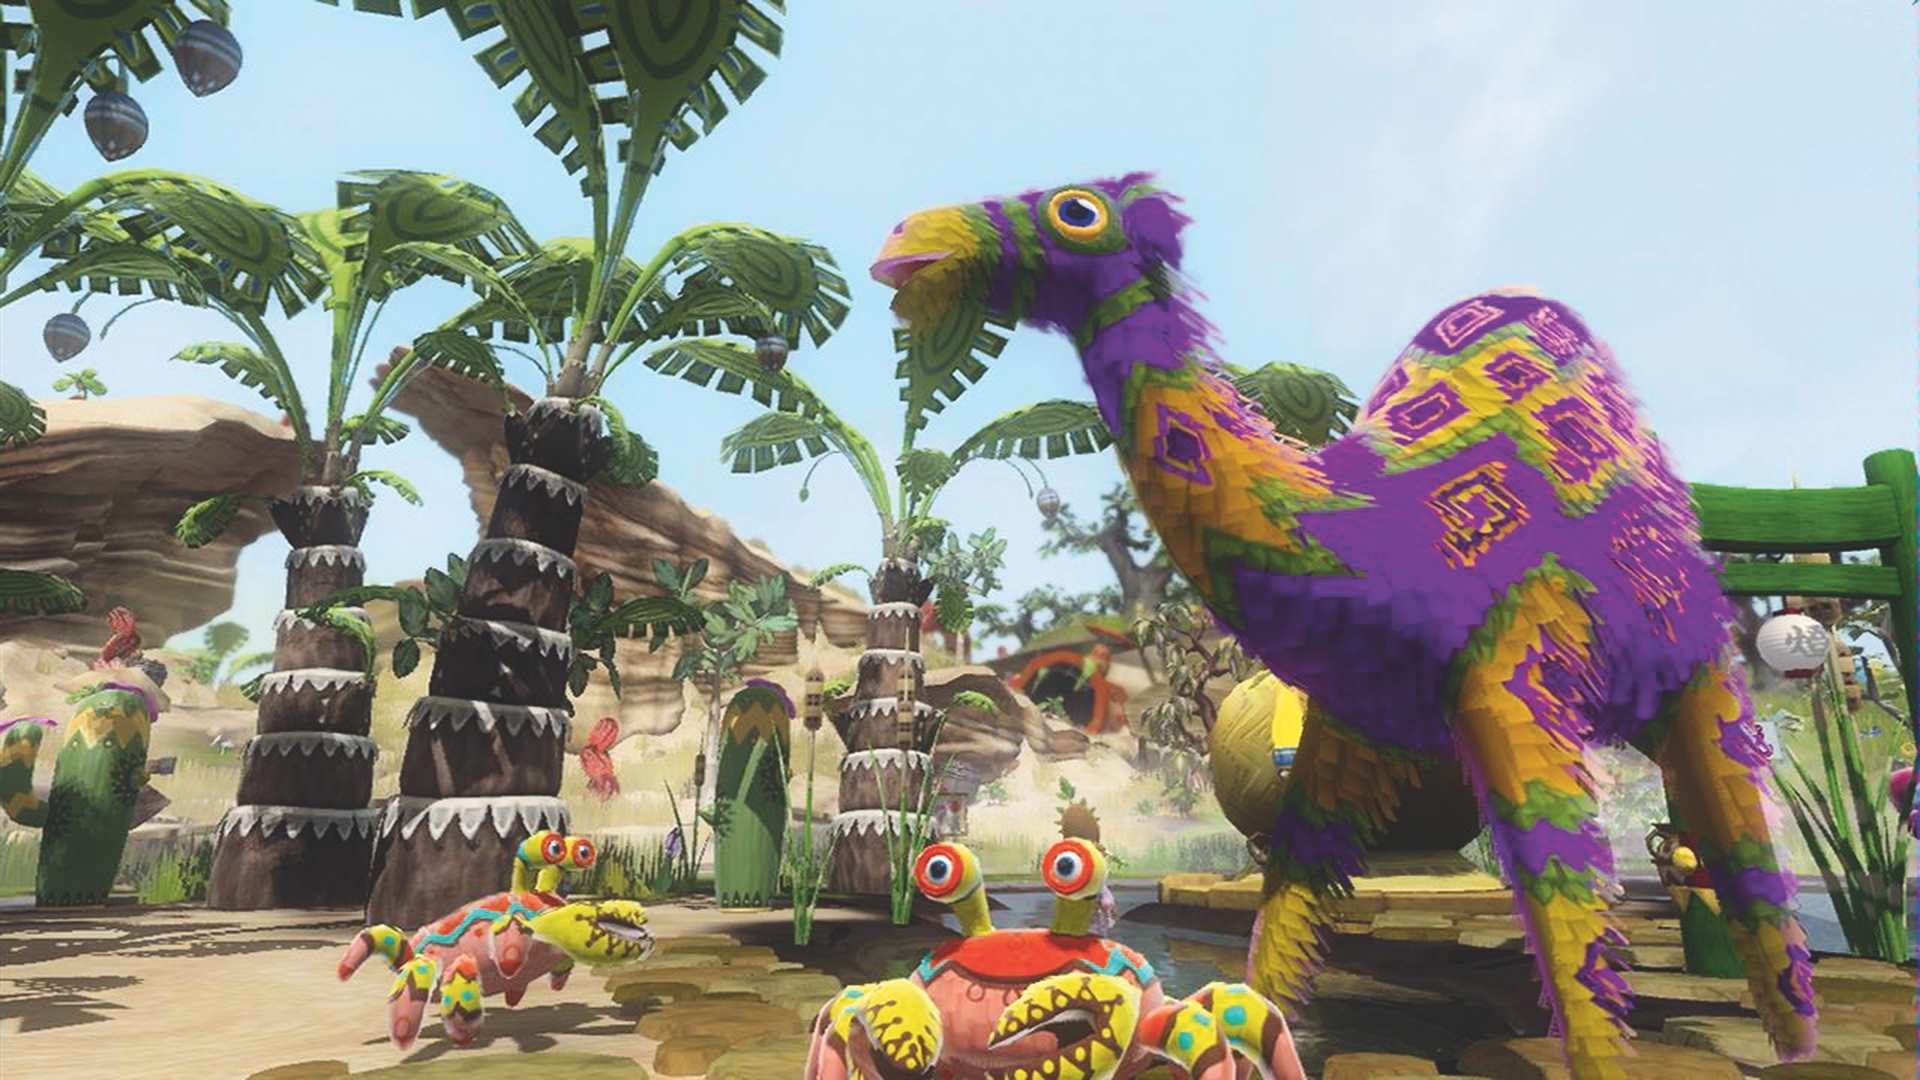 Najlepsze gry rolnicze - Viva Piñata: Trouble in Paradise.  Zrzut ekranu pokazuje mieszankę różnych Pińat spacerujących po ogrodzie gracza.